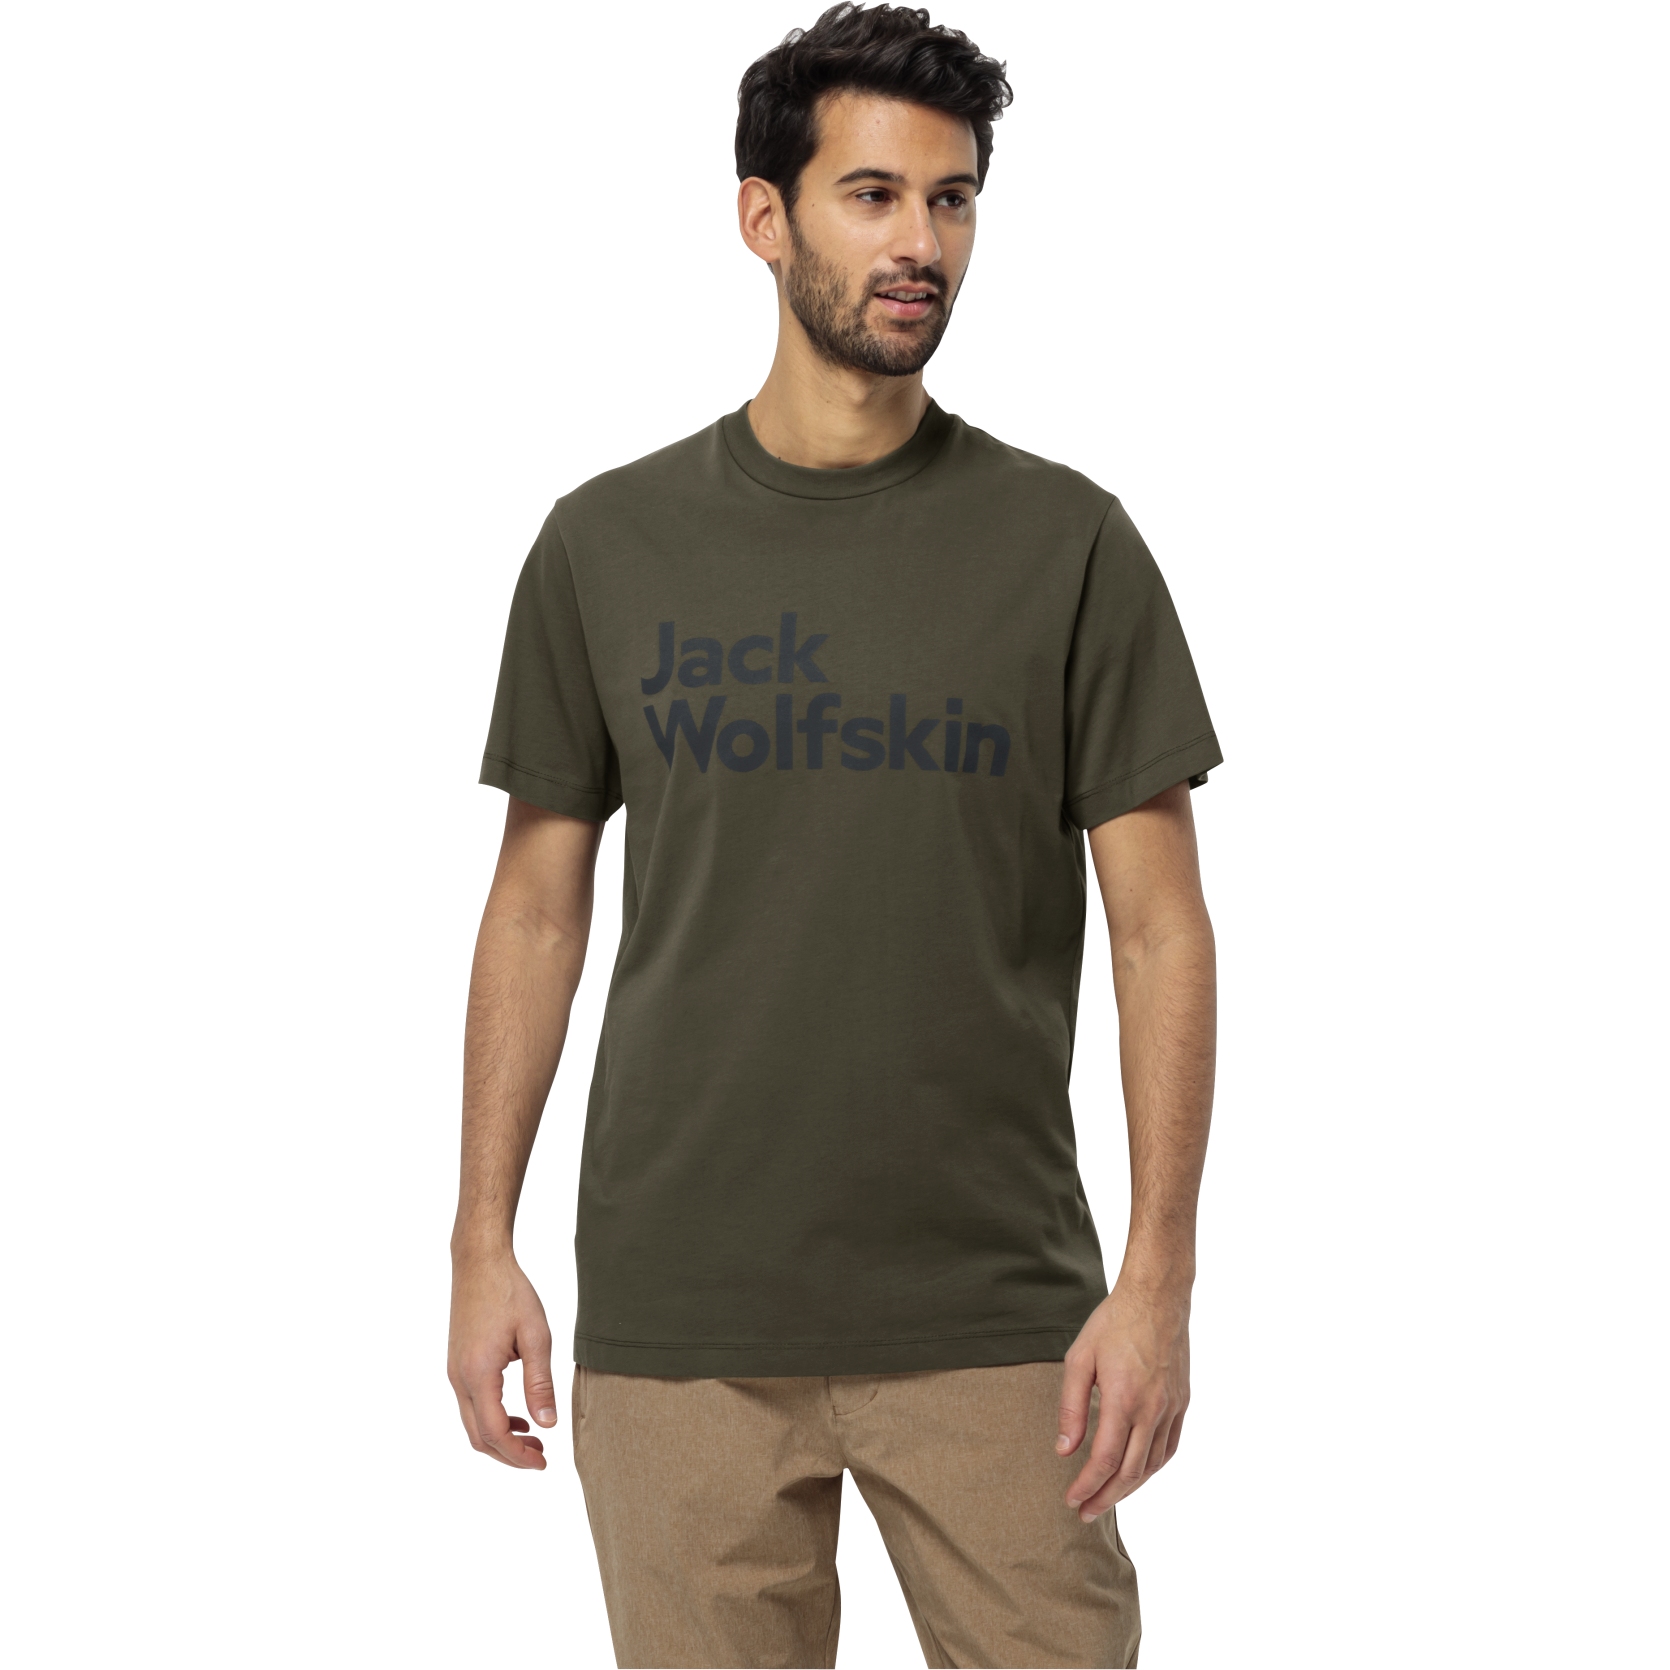 Produktbild von Jack Wolfskin Essential Logo T-Shirt Herren - island moss